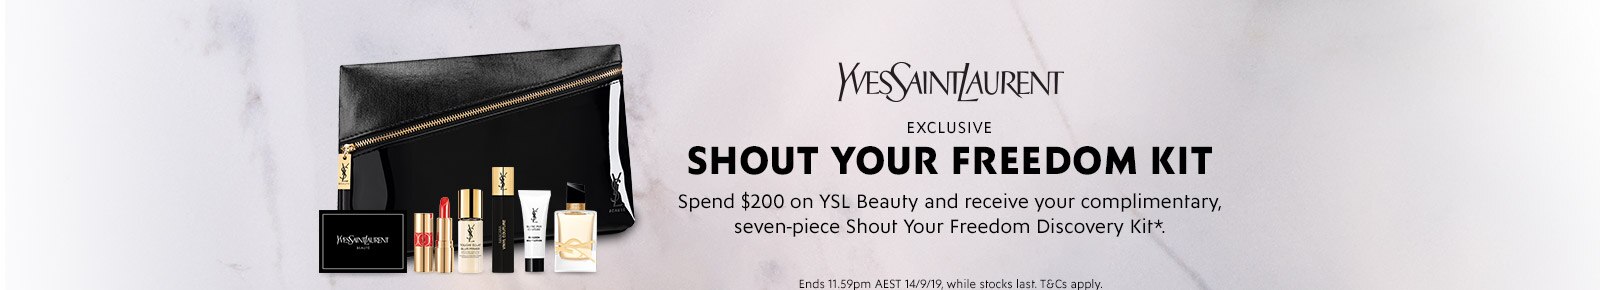 澳洲商城 Myer: YSL 促销 购物满$200即送7件套